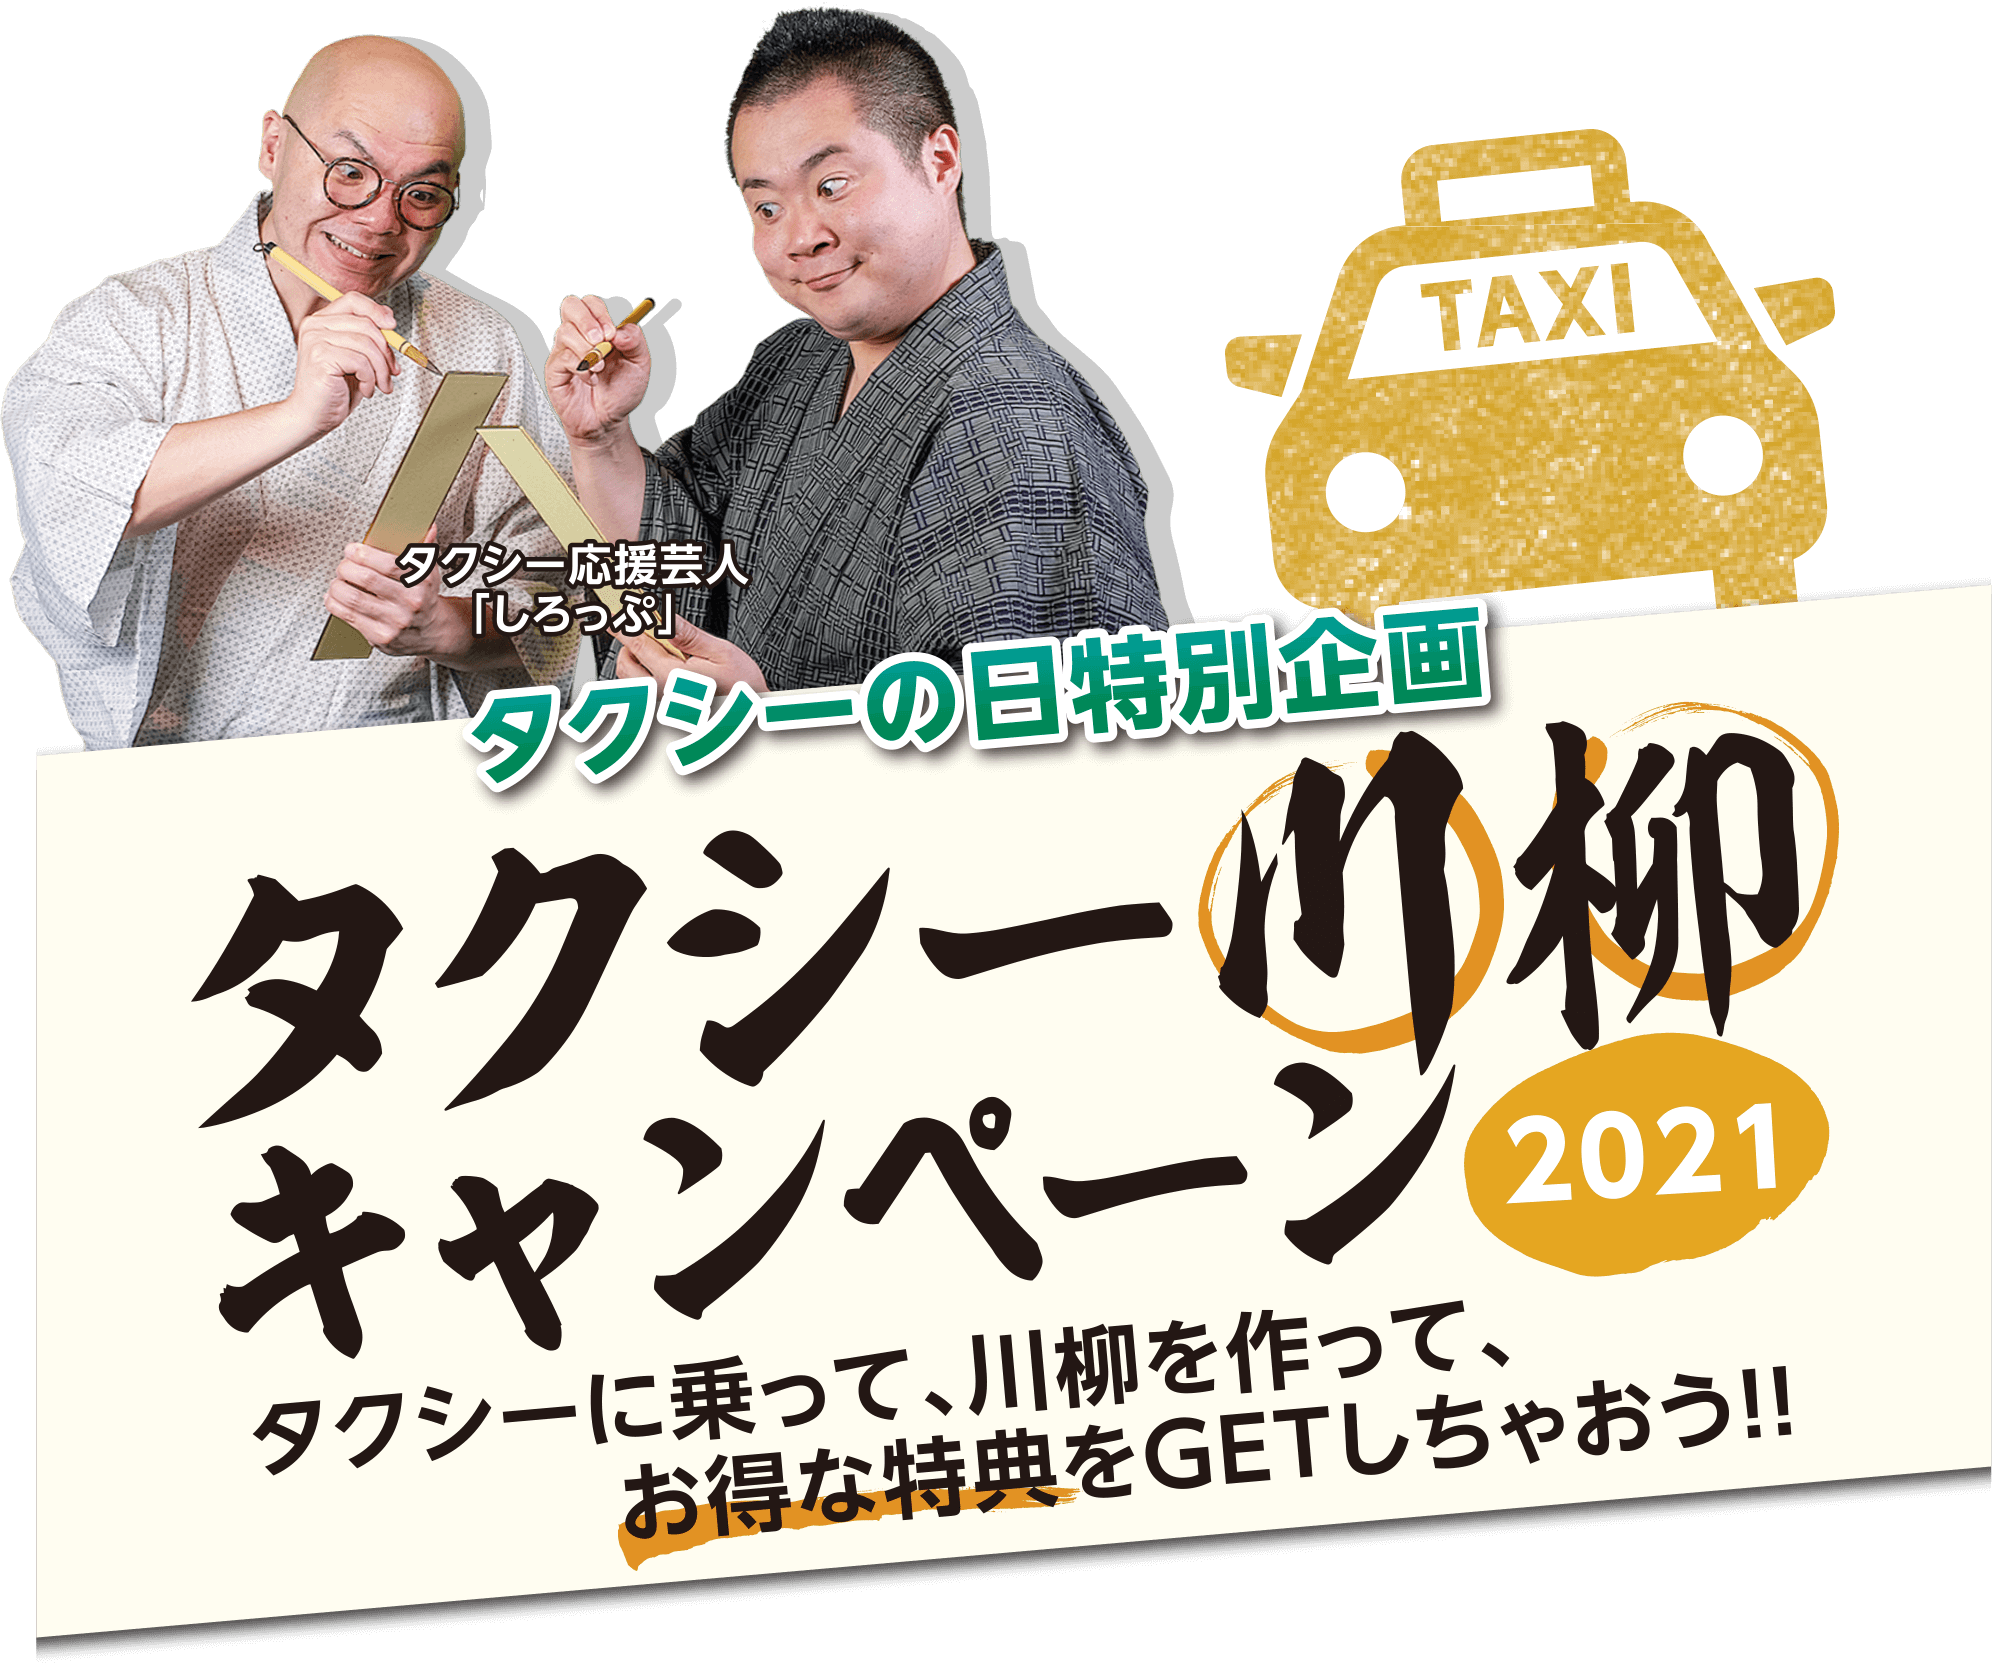 タクシーの日特別企画 タクシー川柳キャンペーン2021 タクシーに乗って、川柳を作って、お得な特典をGETしちゃおう!!